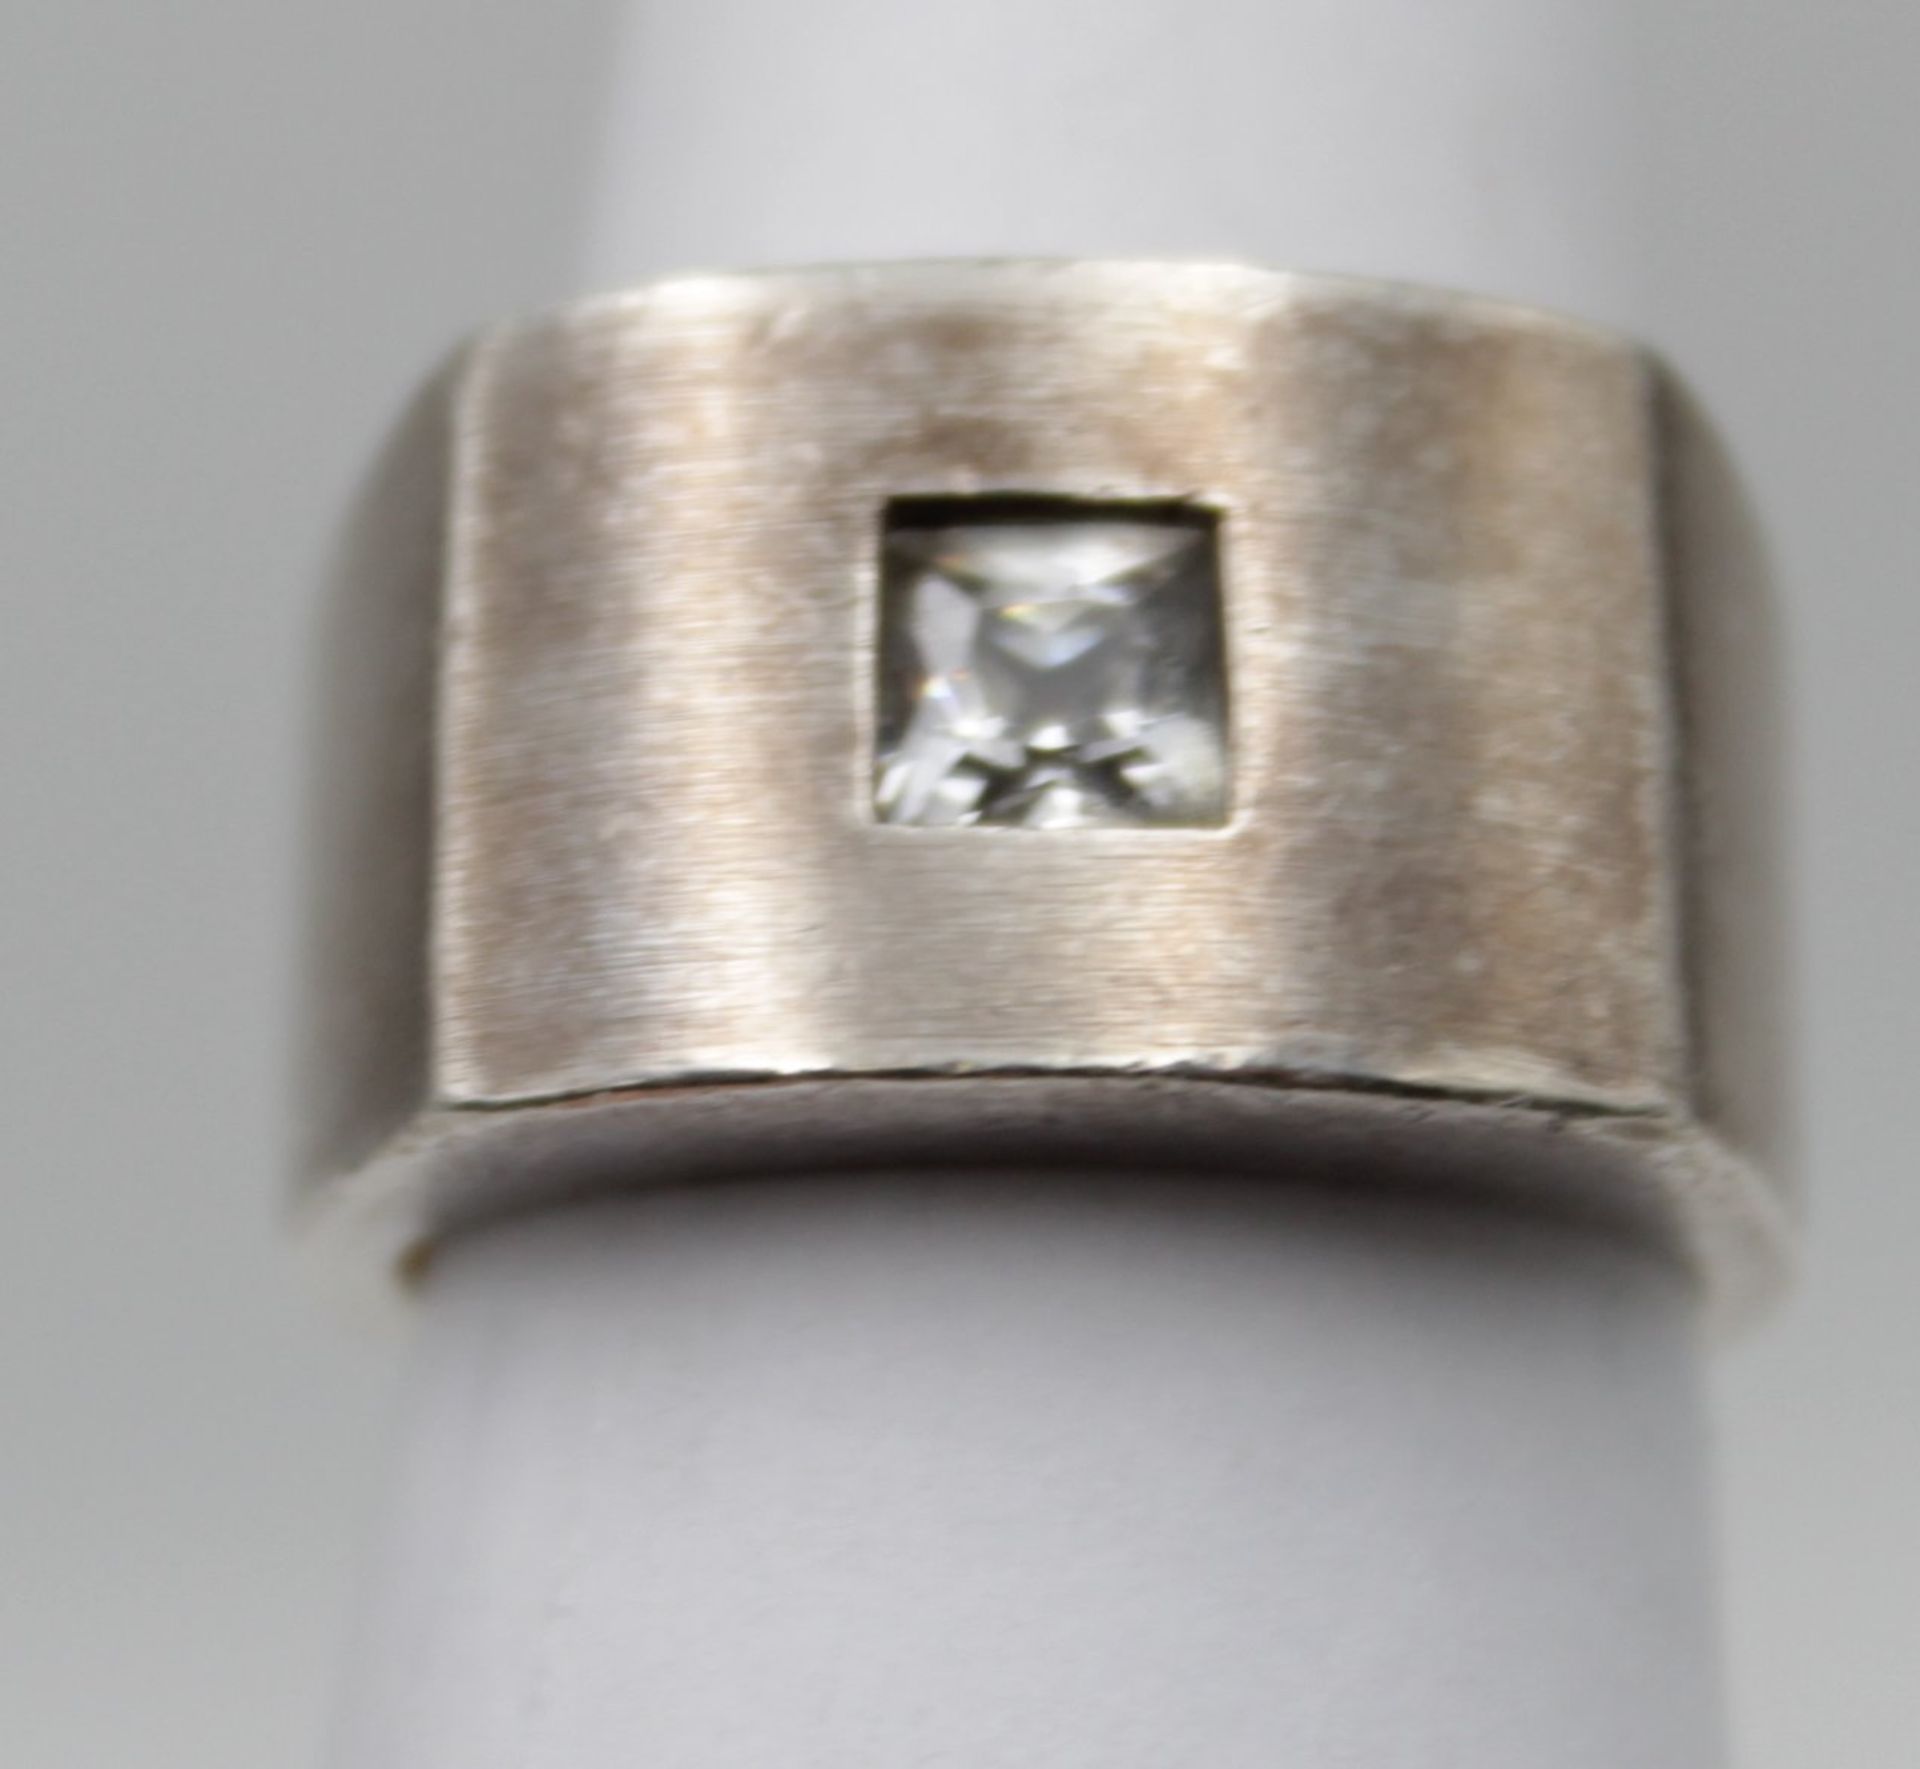 schwerer 925er Silber-Ring, klarer Solitärstein, 11,2gr., RG 55. - Image 3 of 5